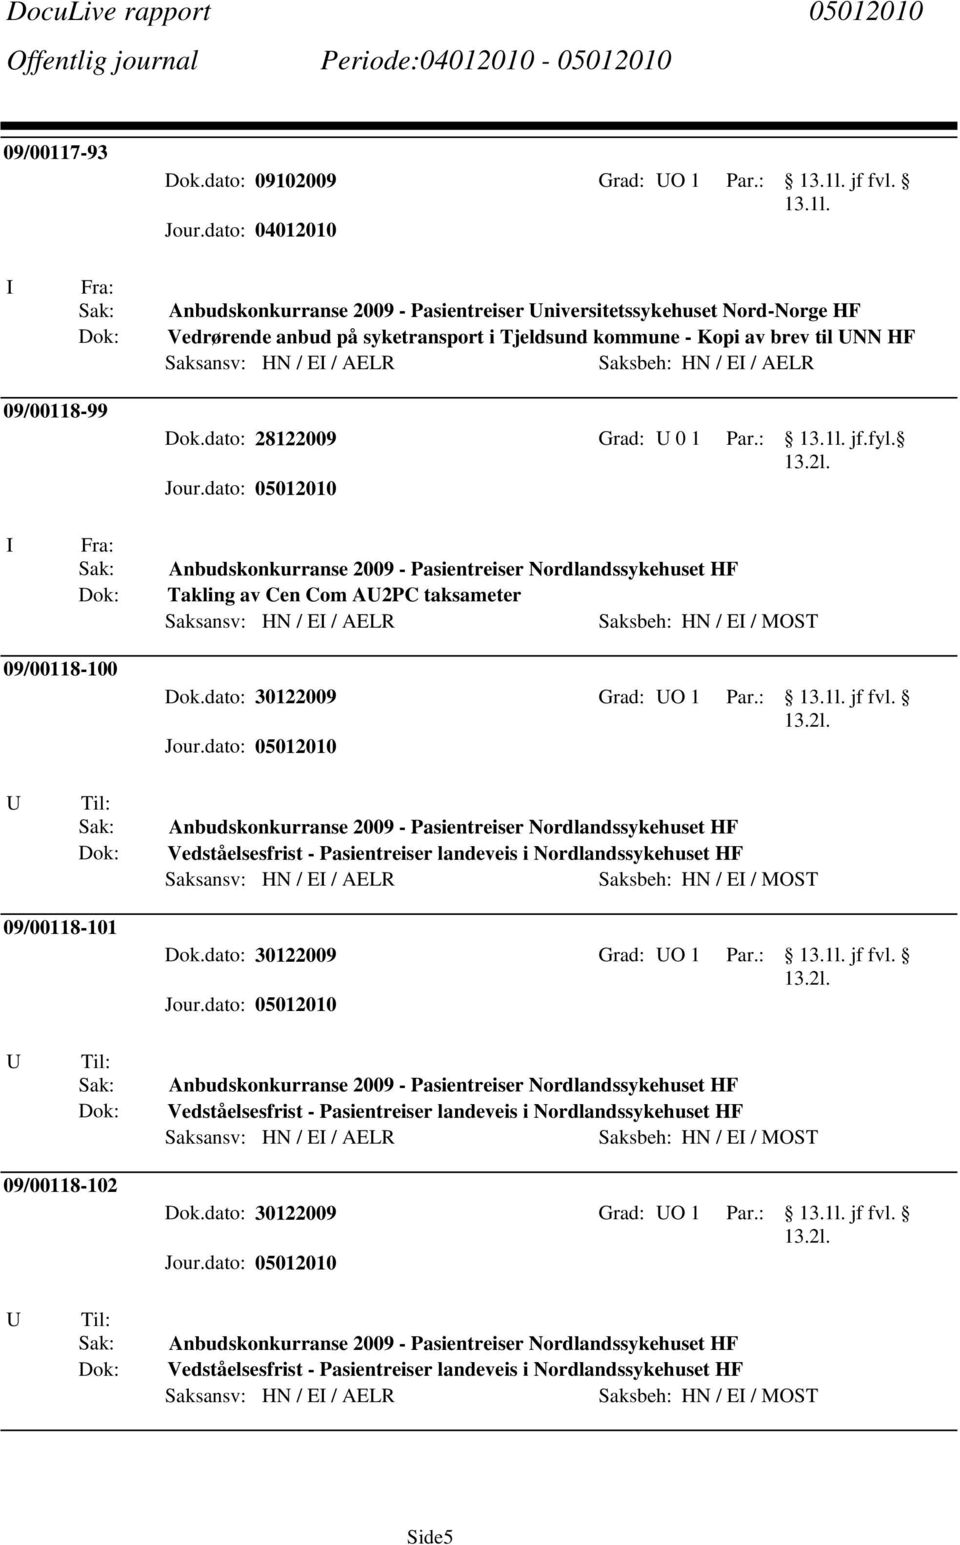 I Fra: Anbudskonkurranse 2009 - Pasientreiser Universitetssykehuset Nord-Norge HF Vedrørende anbud på syketransport i Tjeldsund kommune - Kopi av brev til UNN HF Saksbeh: HN / EI / AELR 09/00118-99